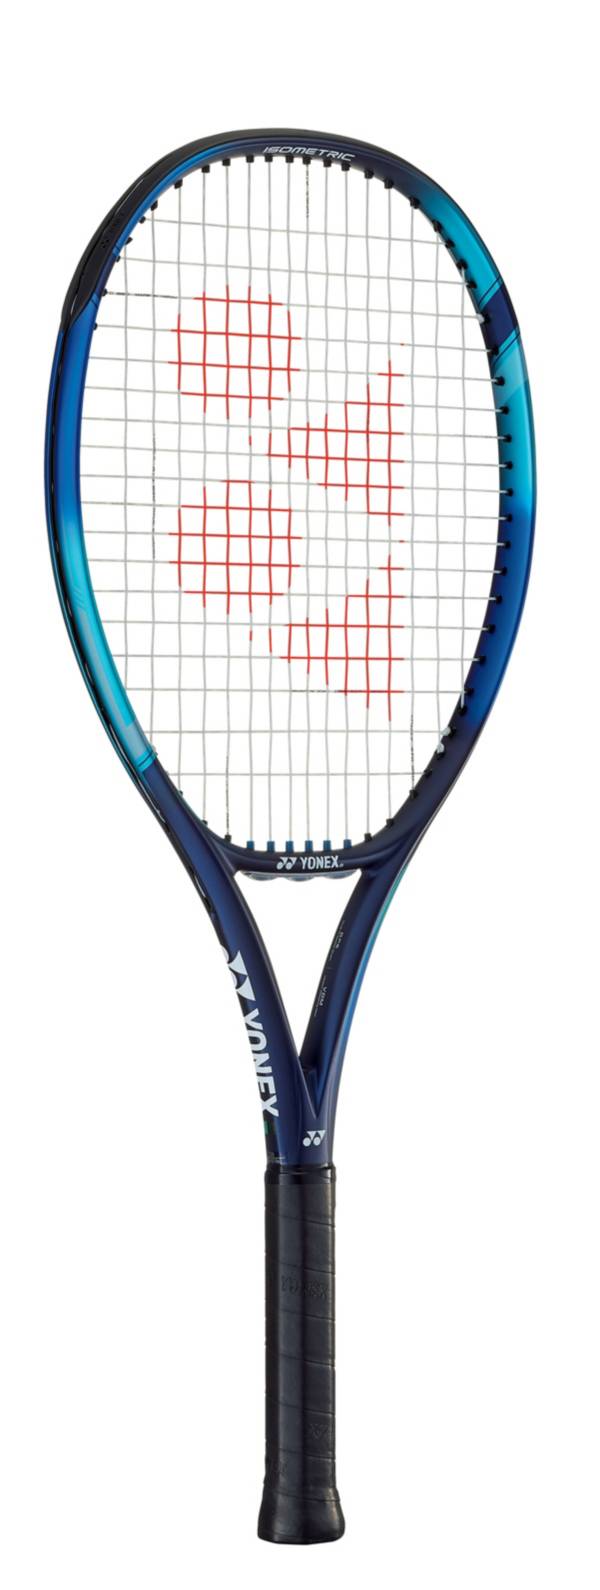 Yonex Ezone 26” Tennis Racquet product image